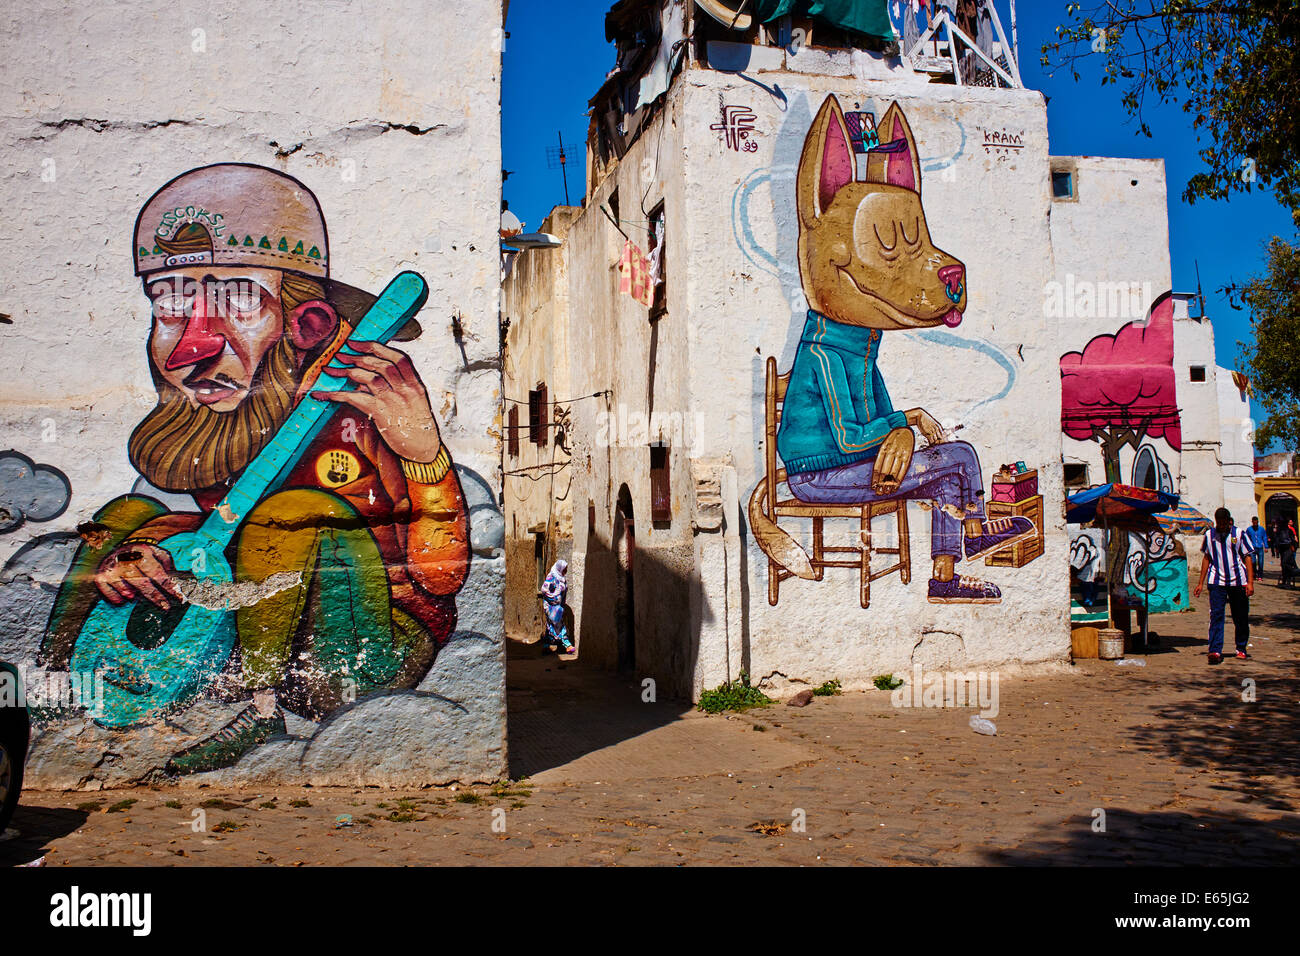 Maroc, Casablanca, la peinture murale, centre-ville Banque D'Images